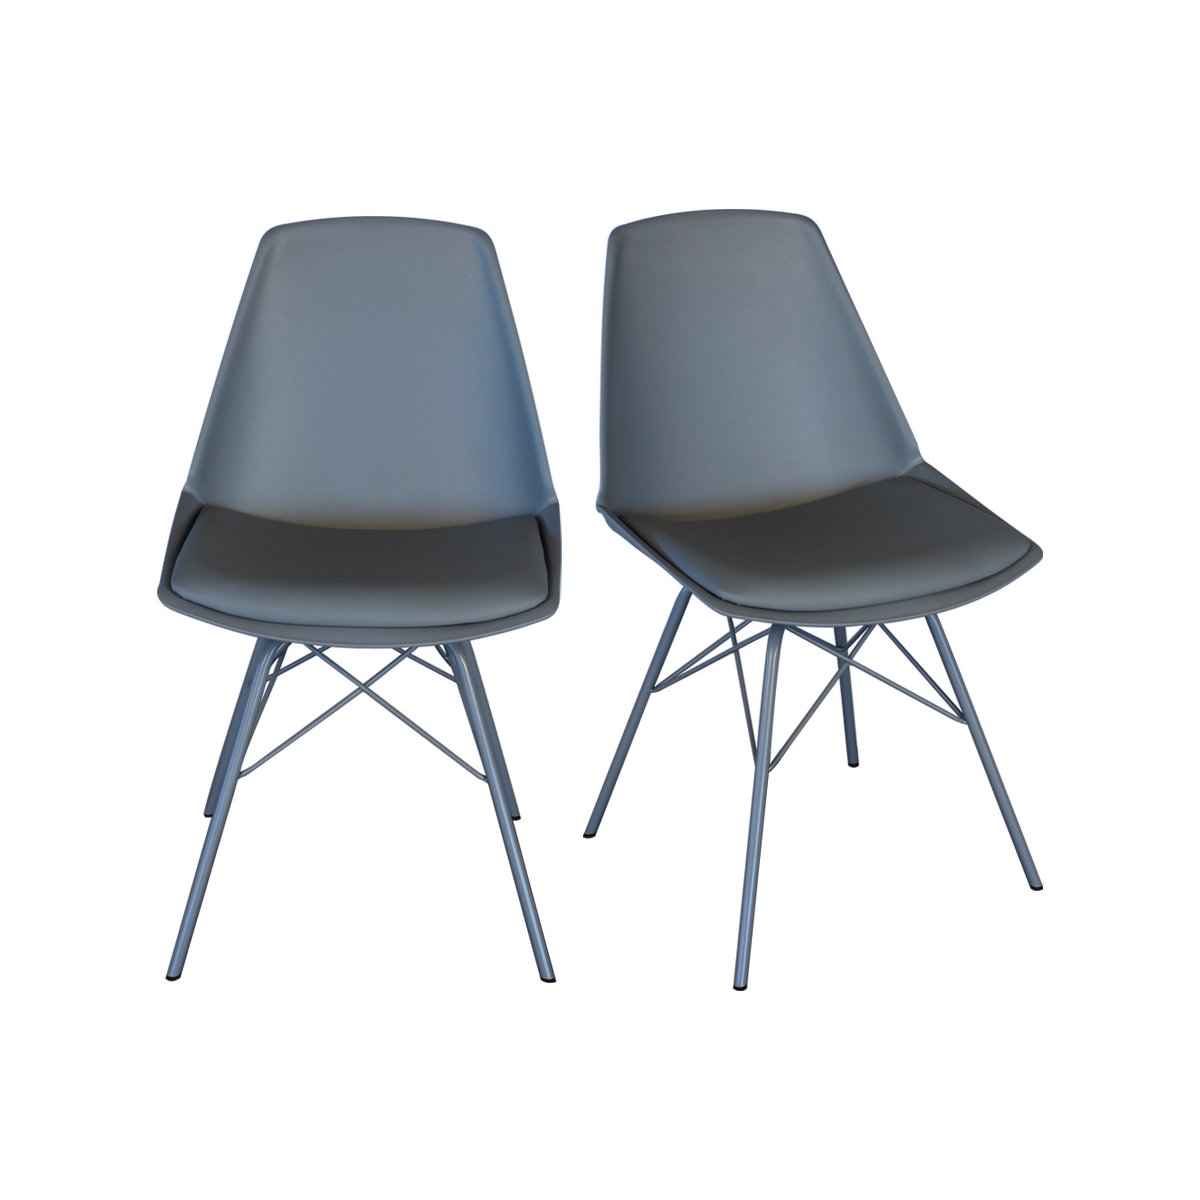 2 chaises design - pieds métal gris